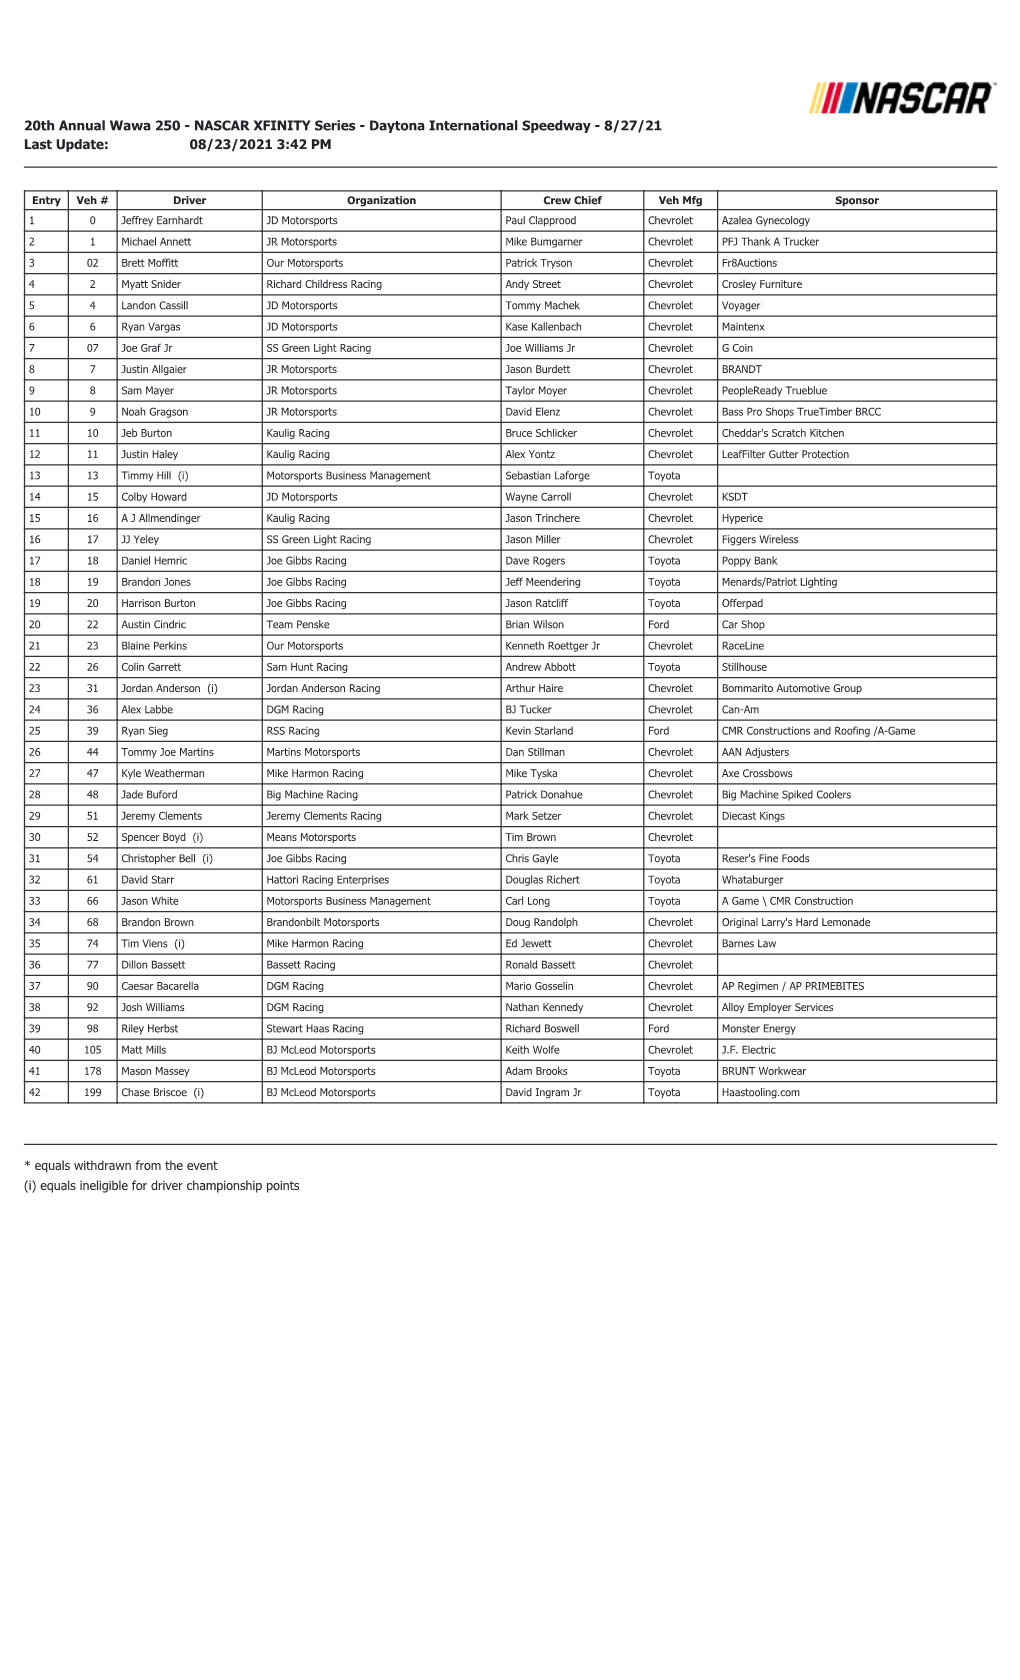 Daytona Xfinity Entry List